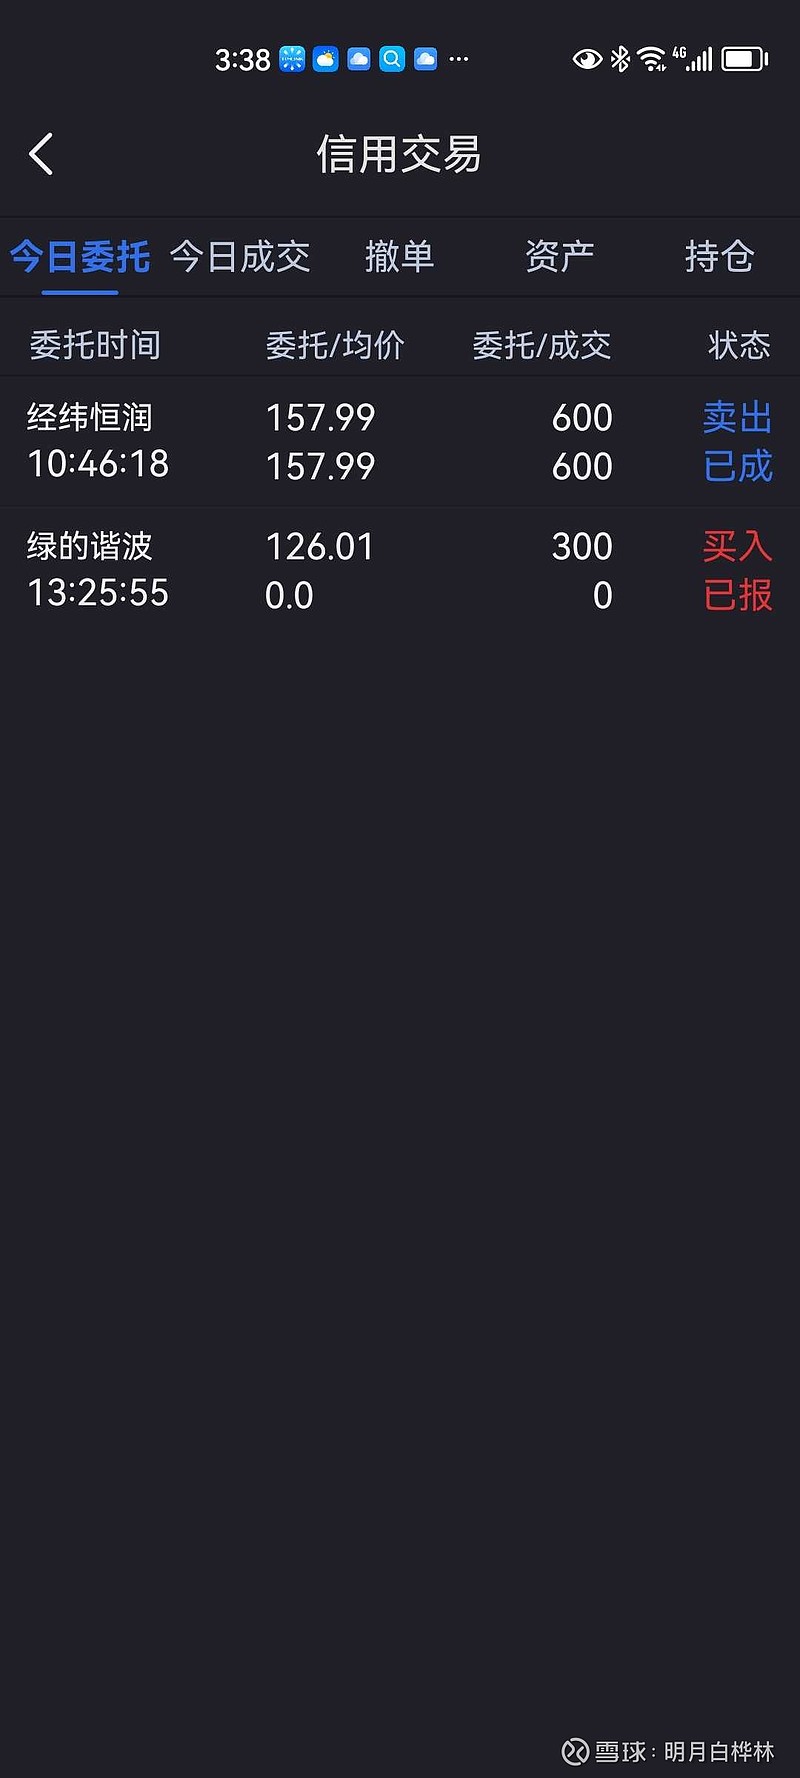 8月7日交易<br/> 盈方微